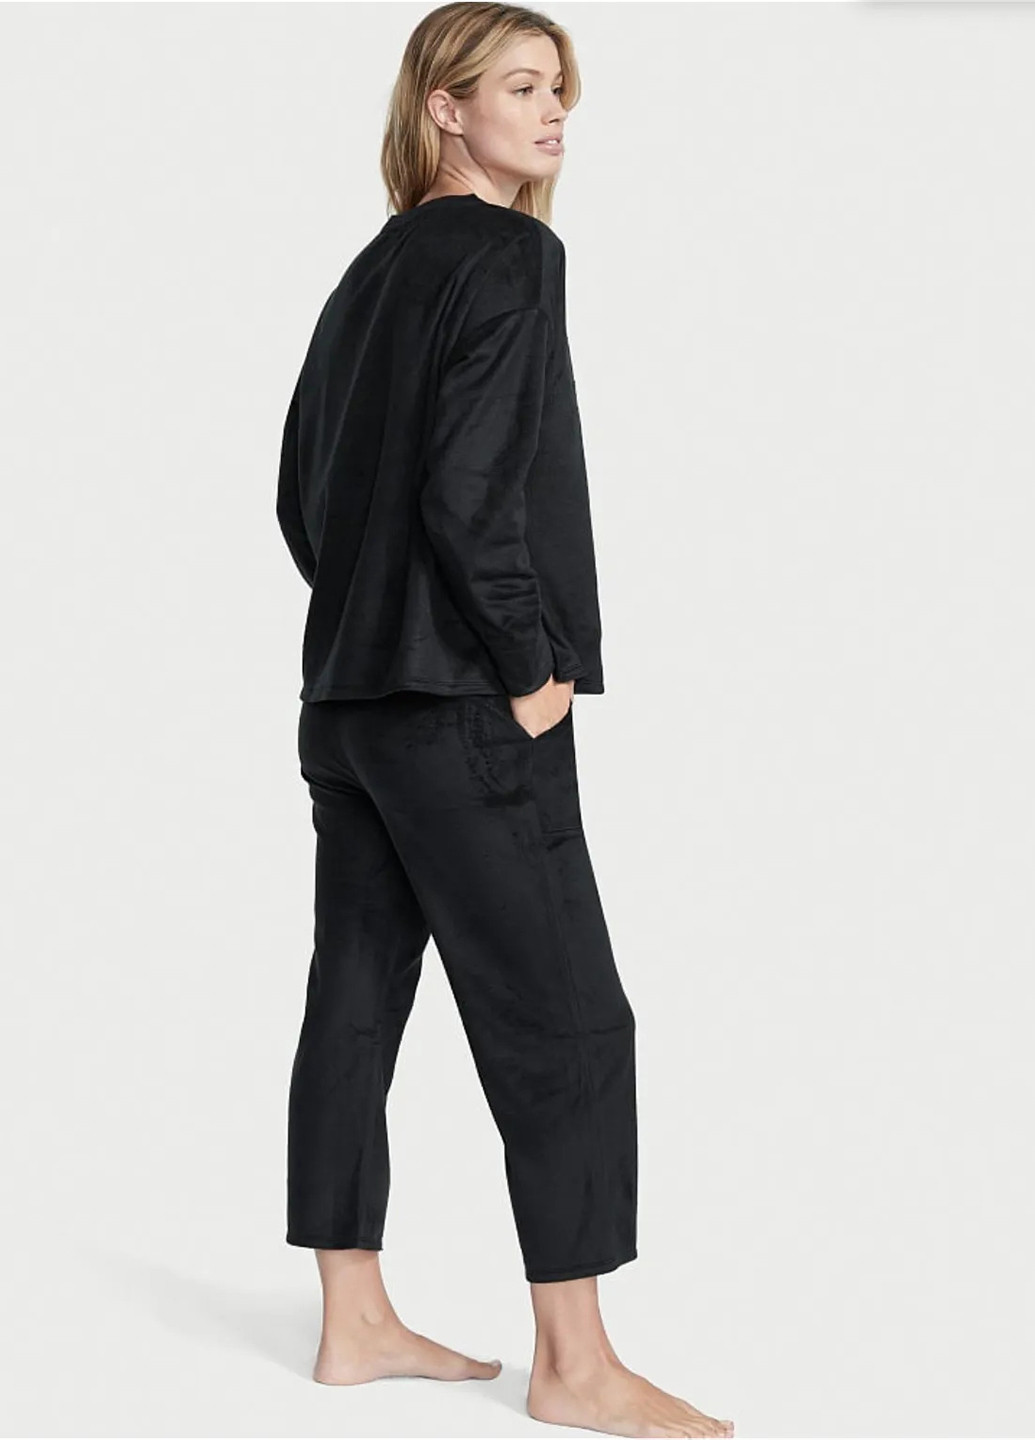 Черная всесезон пижама (свитшот, брюки) свитшот + брюки Victoria's Secret